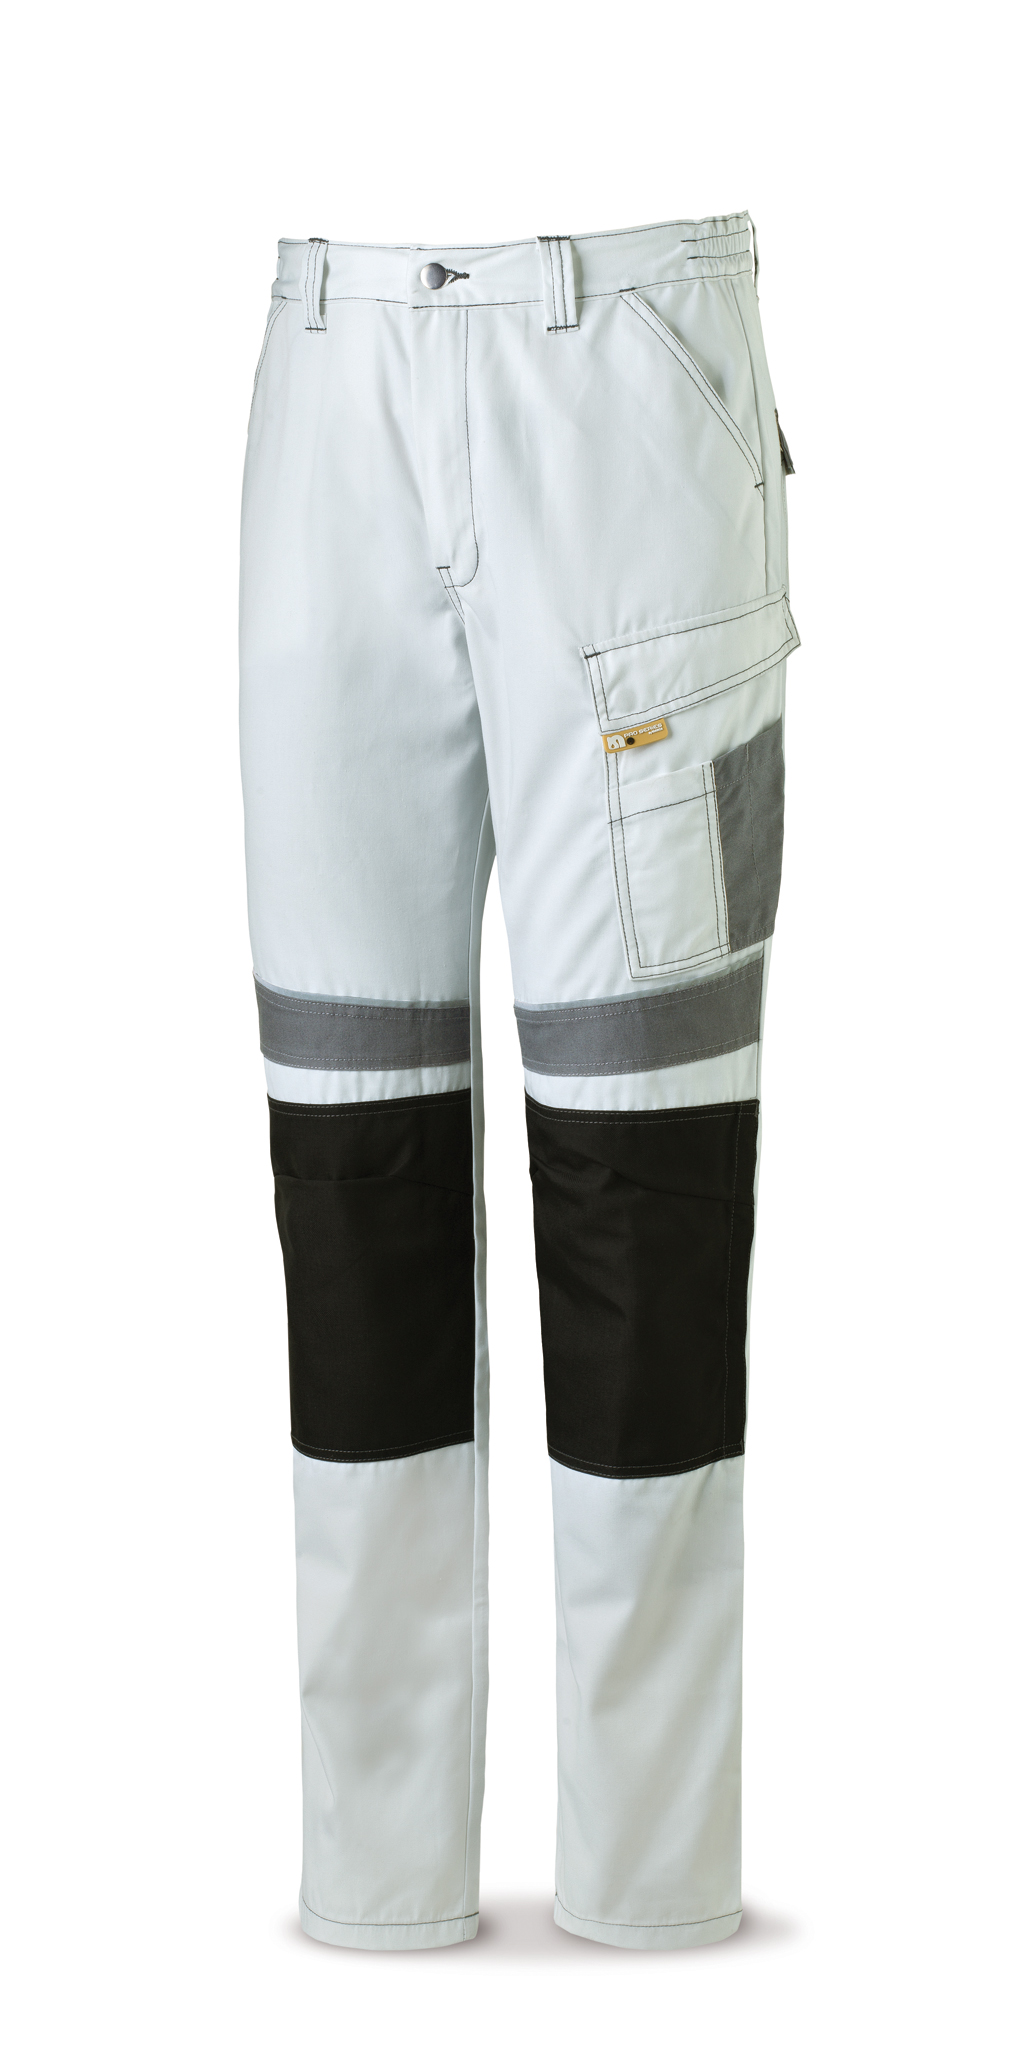 588-PBG Vestuario Laboral Pro Series Pantalón tergal canvas 245 g. Color blanco/gris.